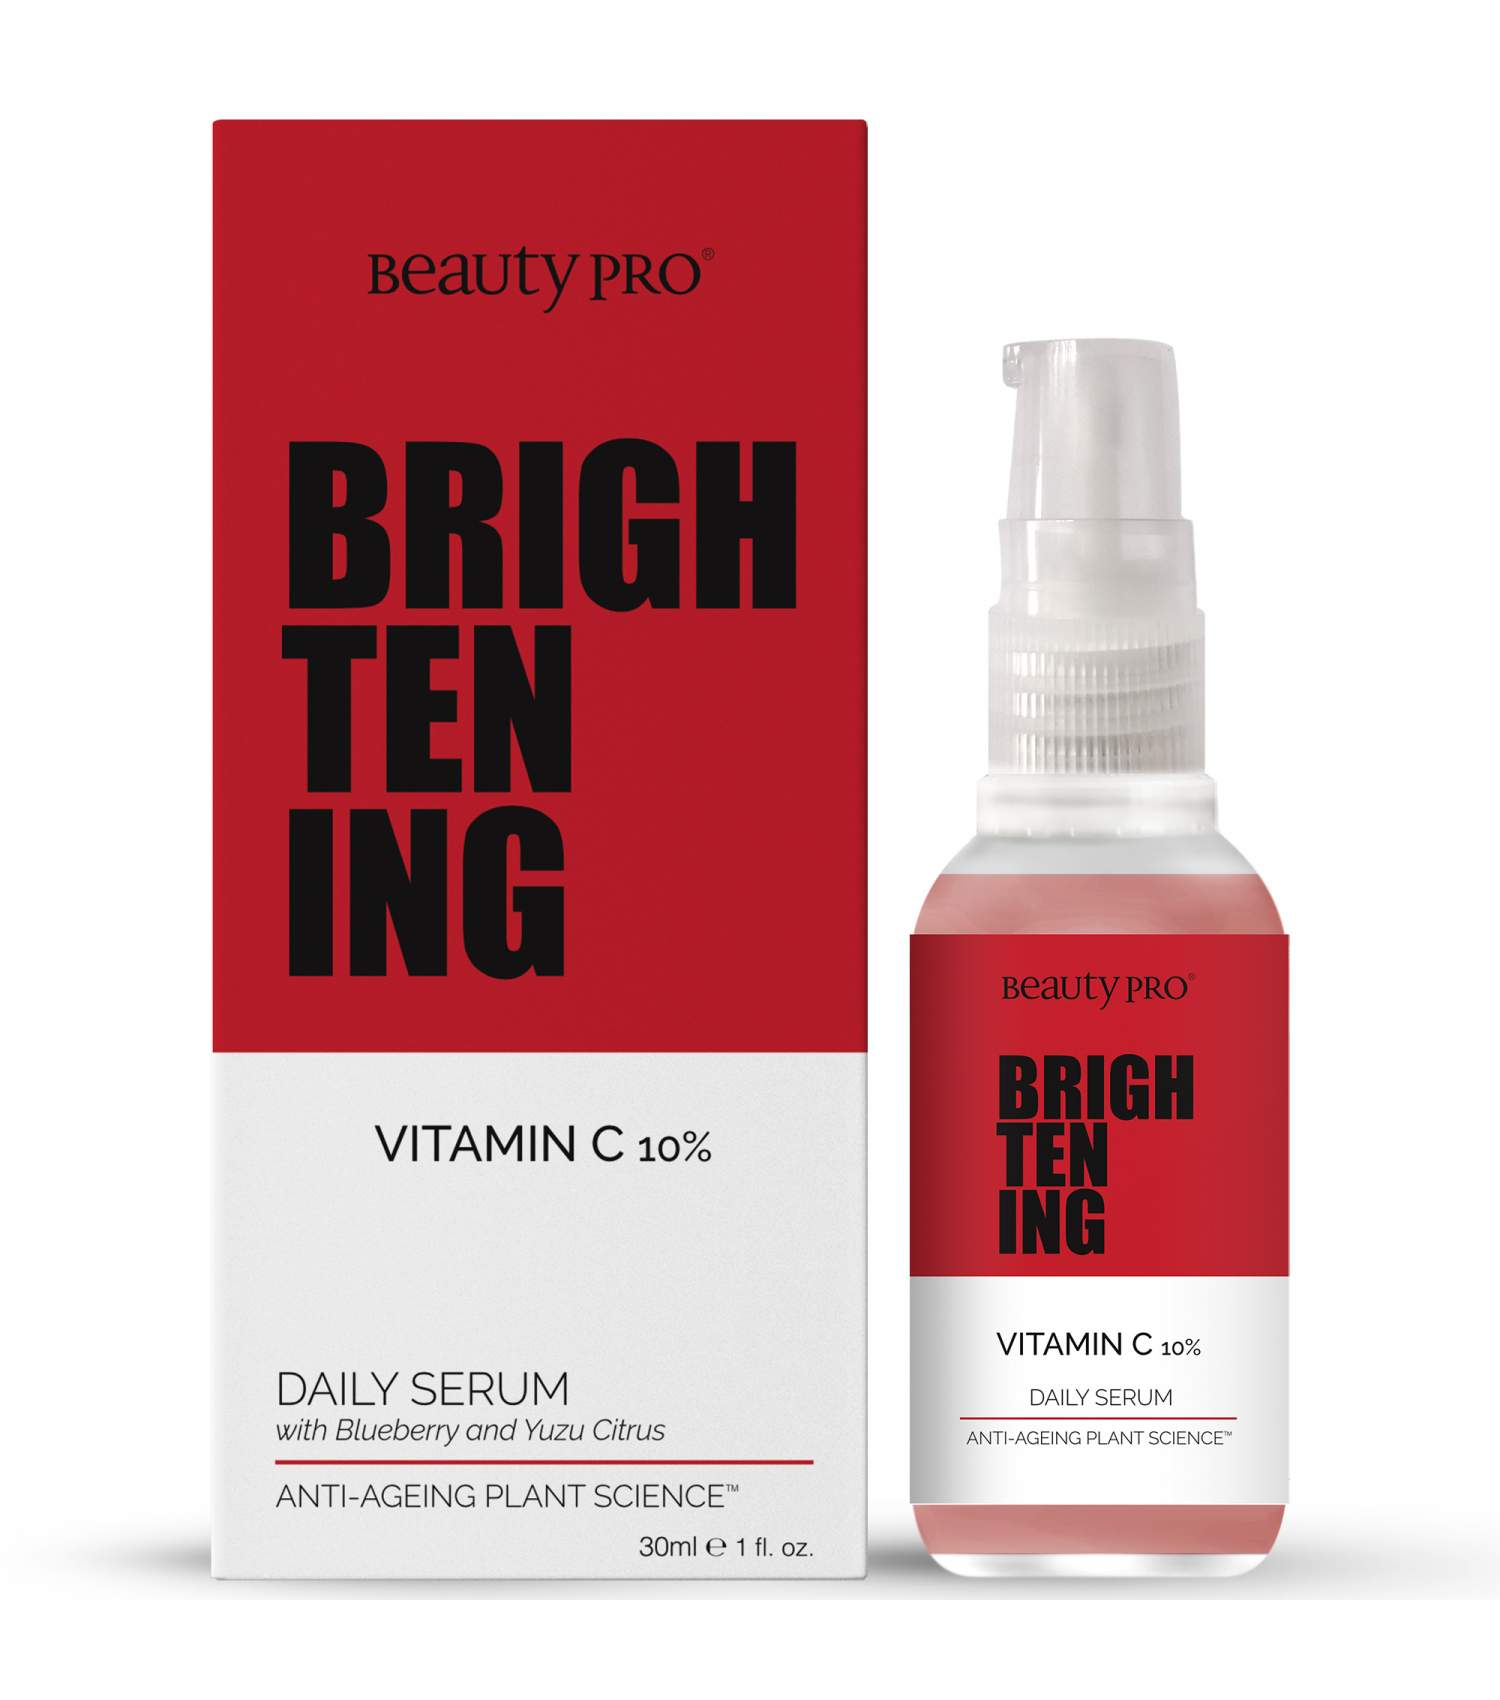 BeautyPro BRIGHTENING 10% Vitamin-C Daily Serum 30ml